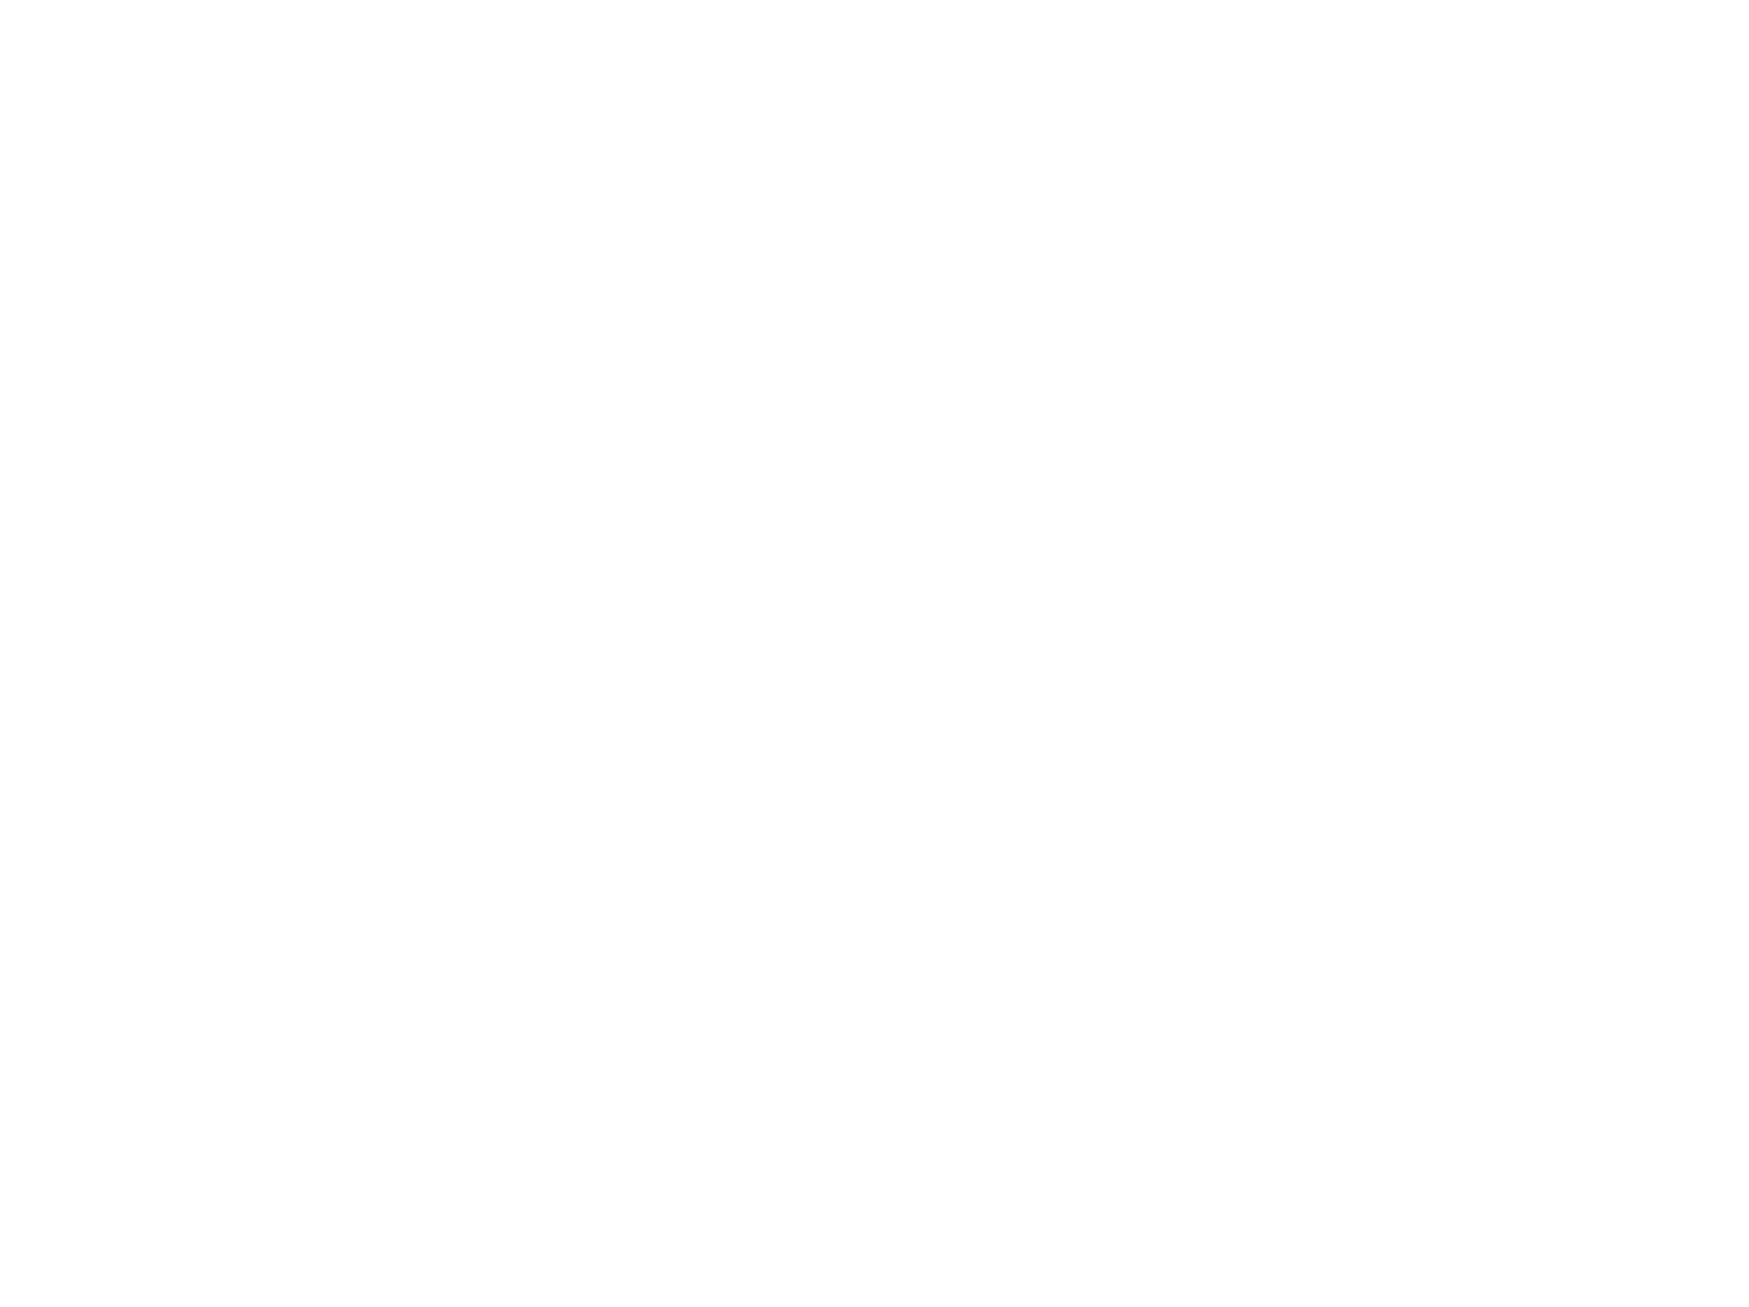 Michelangelo's Sistine Chapel: Philadelphia Exhibit